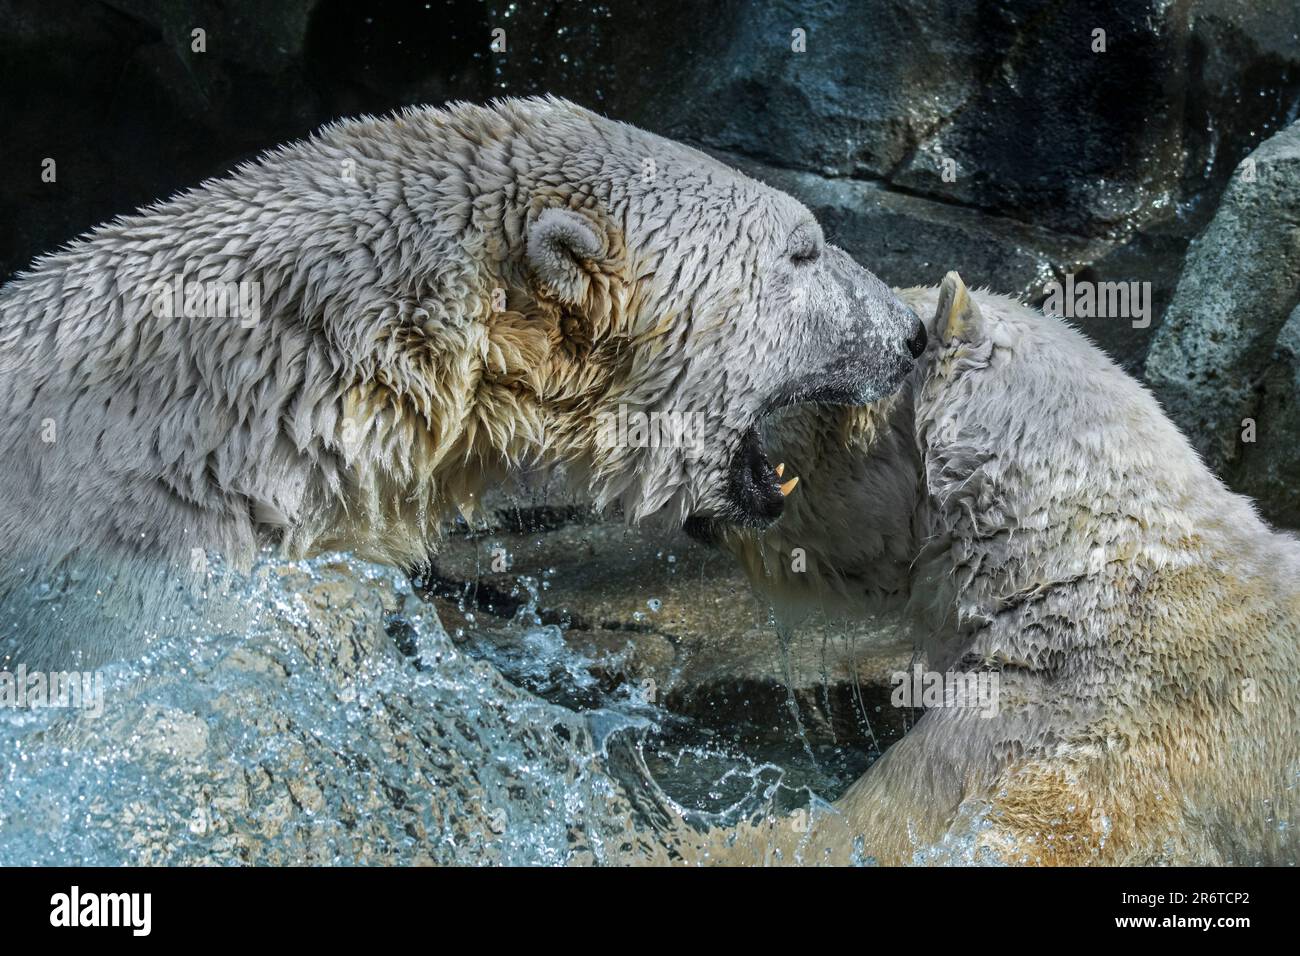 Deux ours polaires (Ursus maritimus) combats de jeu / jouer à la lutte dans l'eau de la piscine au zoo lors d'une journée chaude en été Banque D'Images